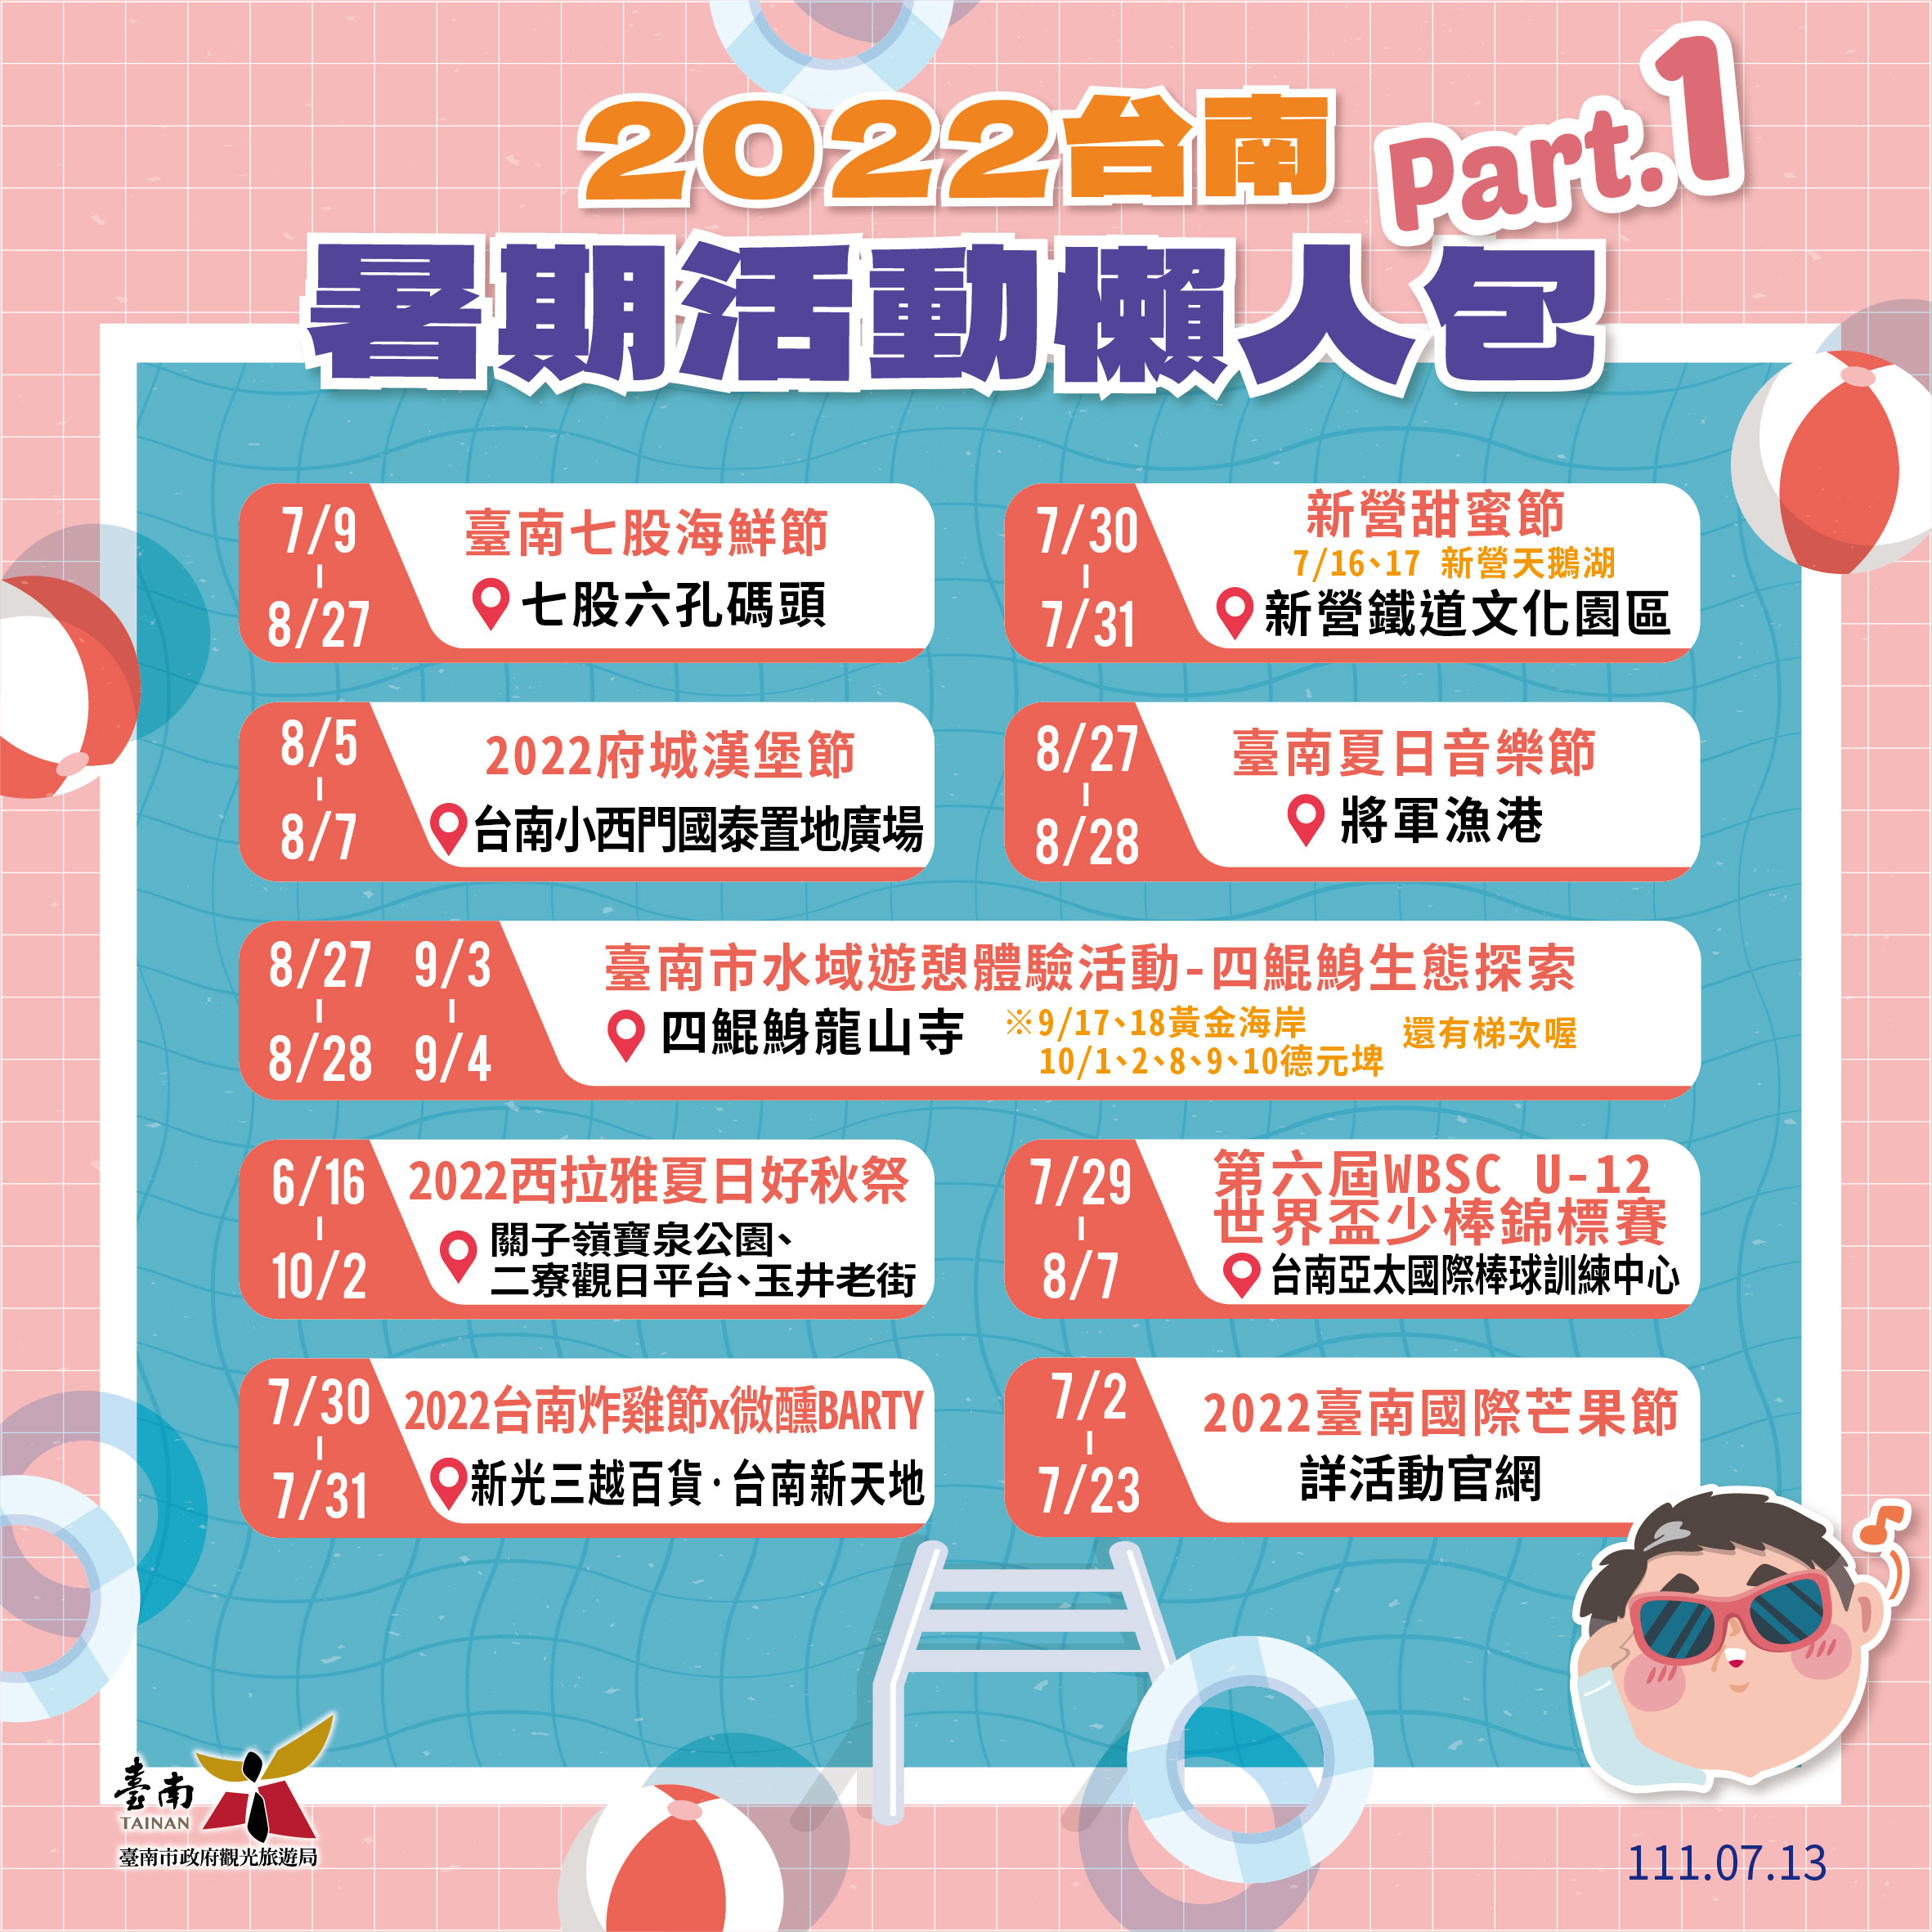 2022台南暑期活動懶人包天空 水域 吃喝玩樂 目不暇給